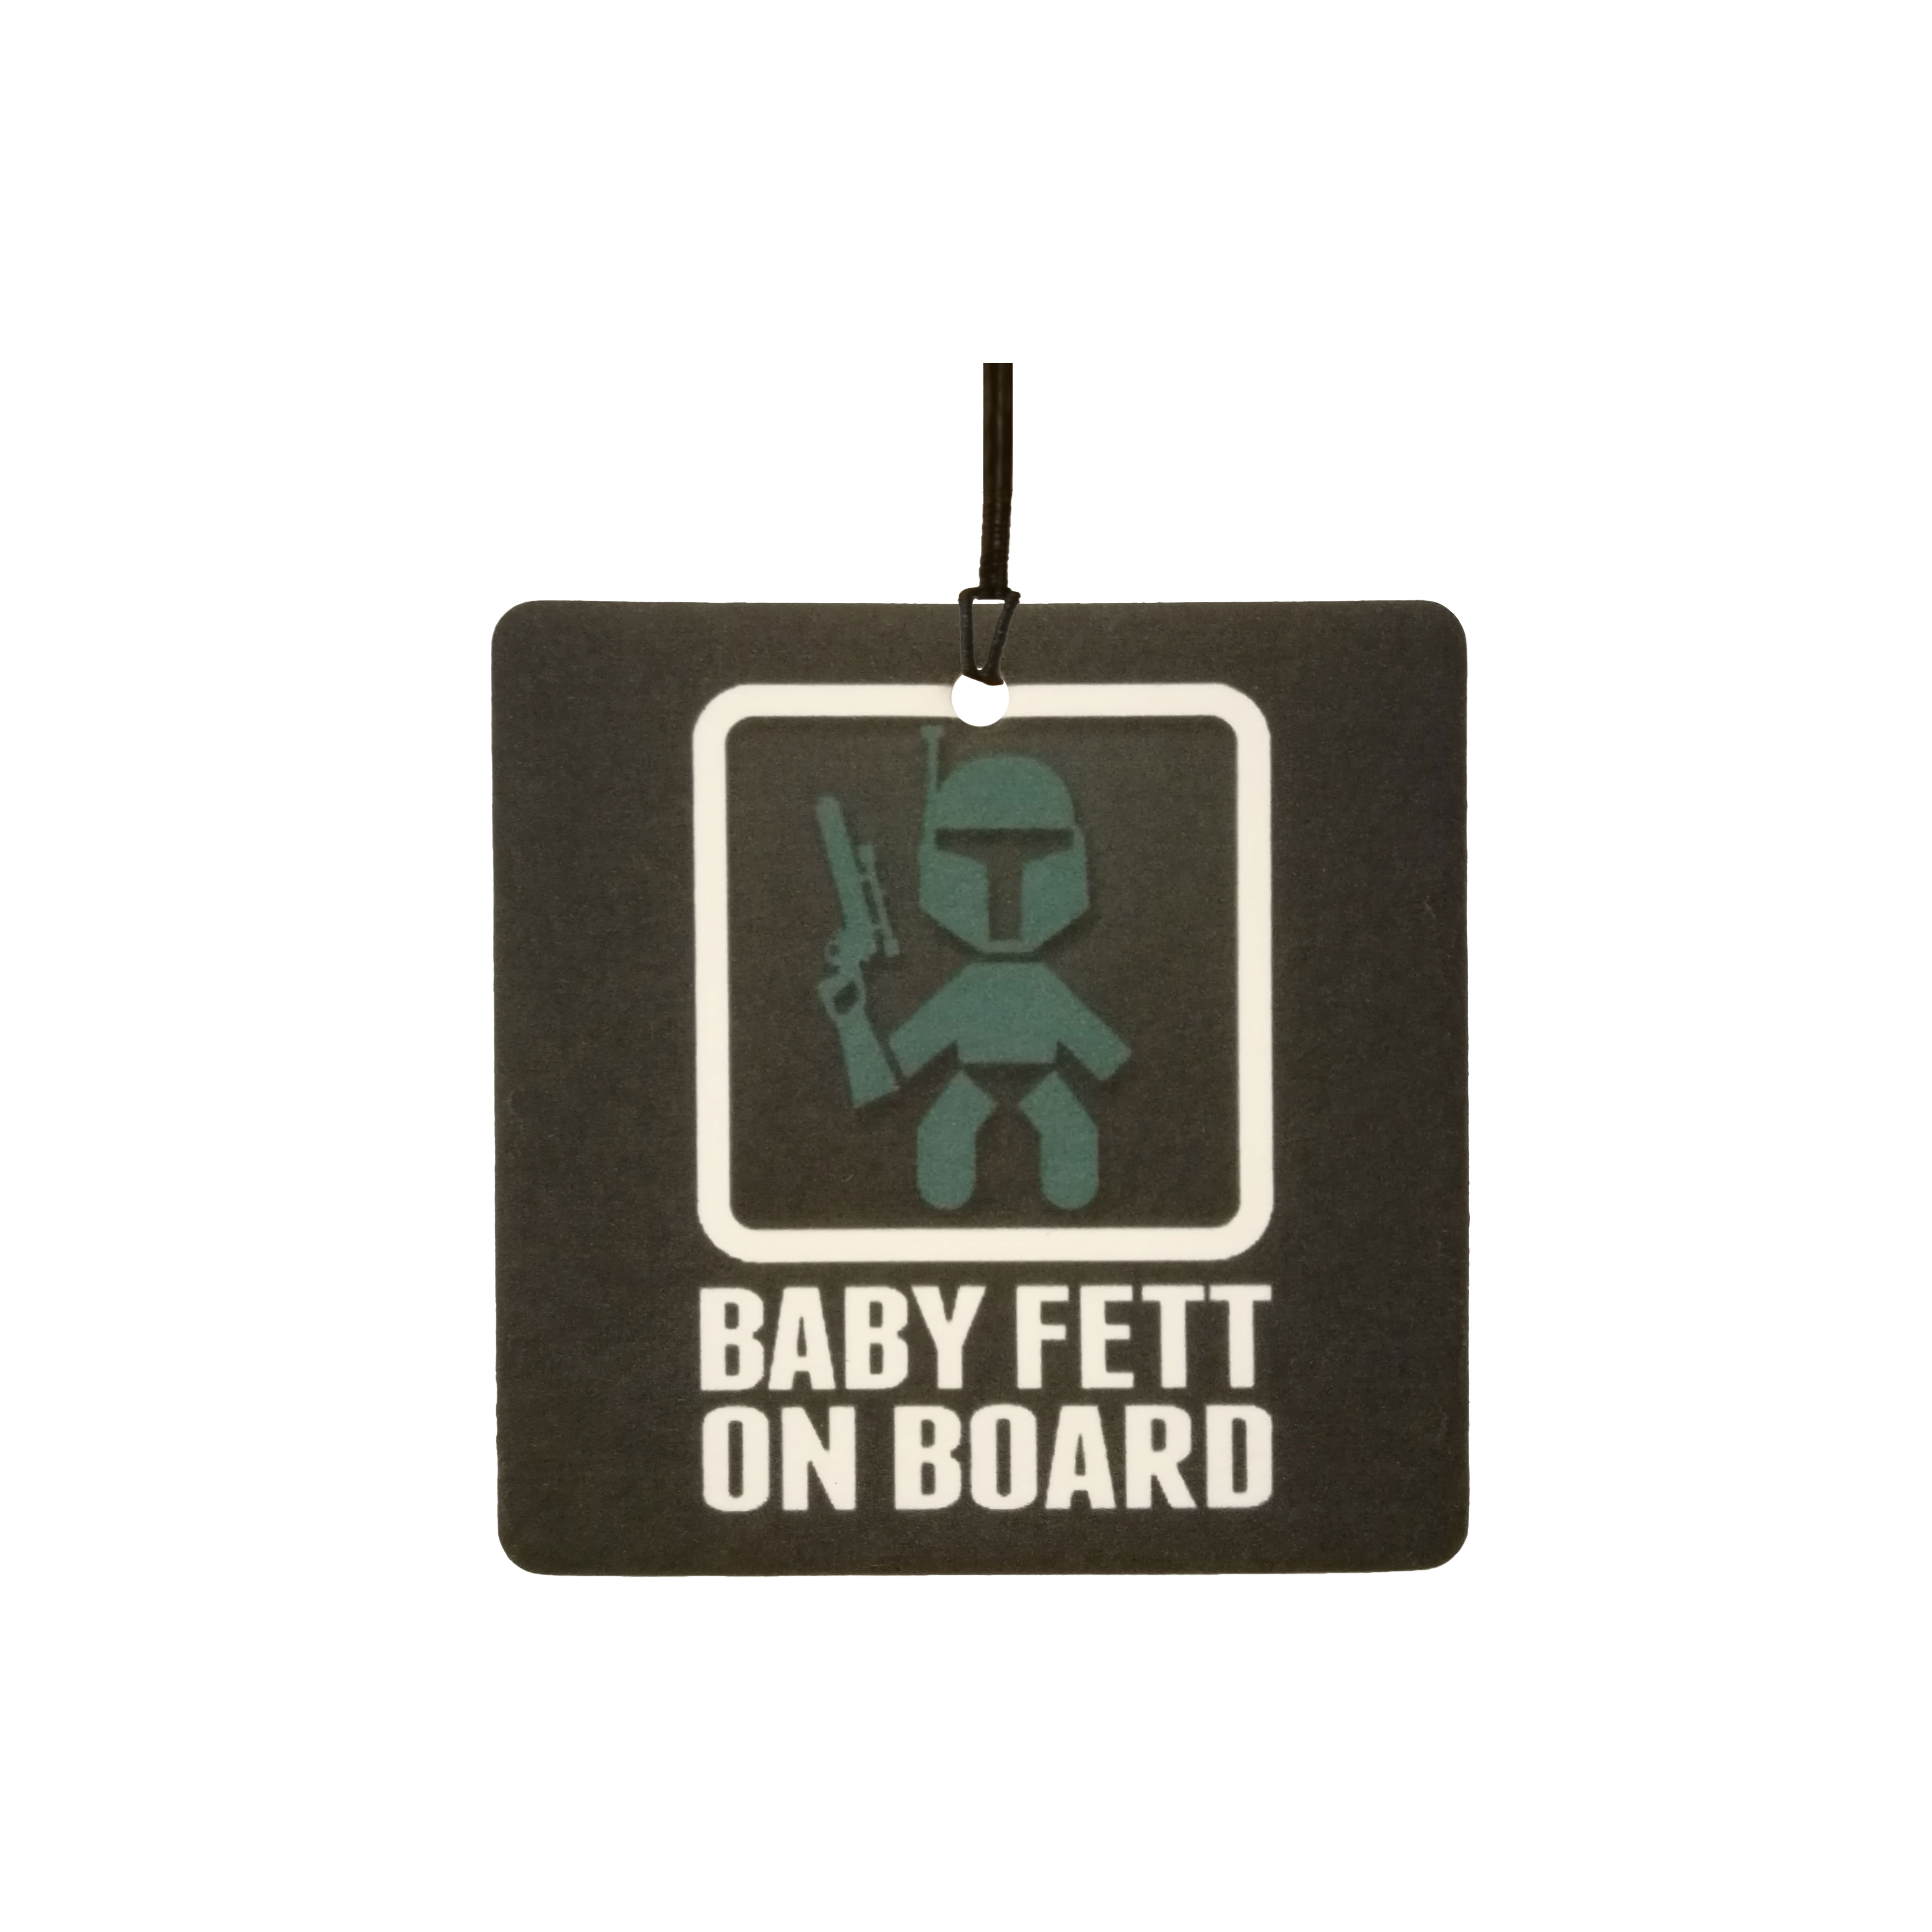 Baby Fett On Board